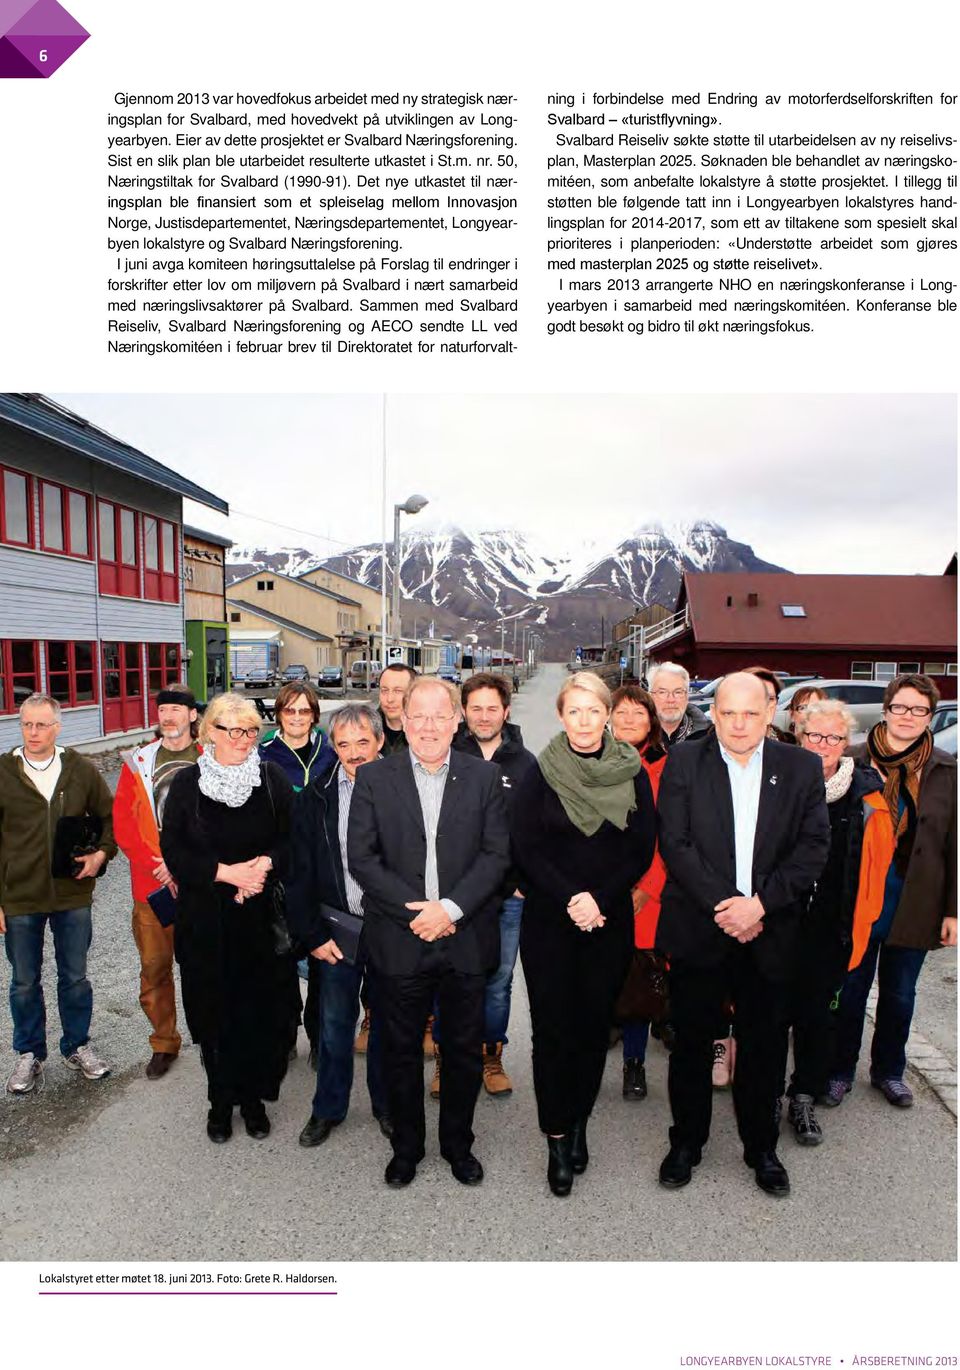 Det nye utkastet til næringsplan ble finansiert som et spleiselag mellom Innovasjon Norge, Justisdepartementet, Næringsdepartementet, Longyearbyen lokalstyre og Svalbard Næringsforening.